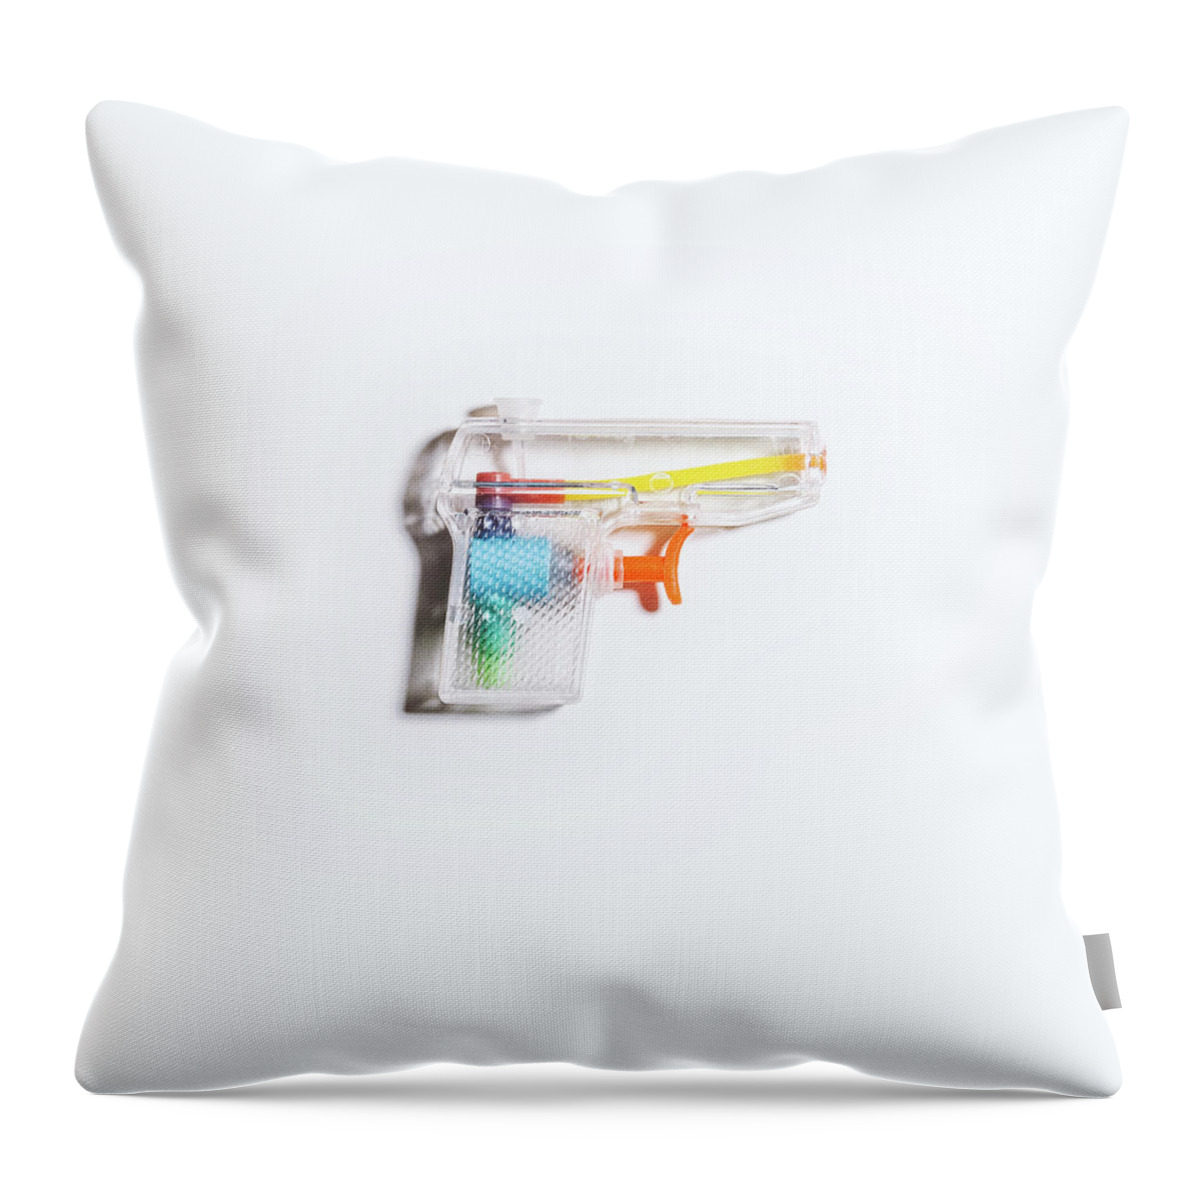 Still Life Throw Pillow featuring the photograph Squirt Gun by Scott Norris